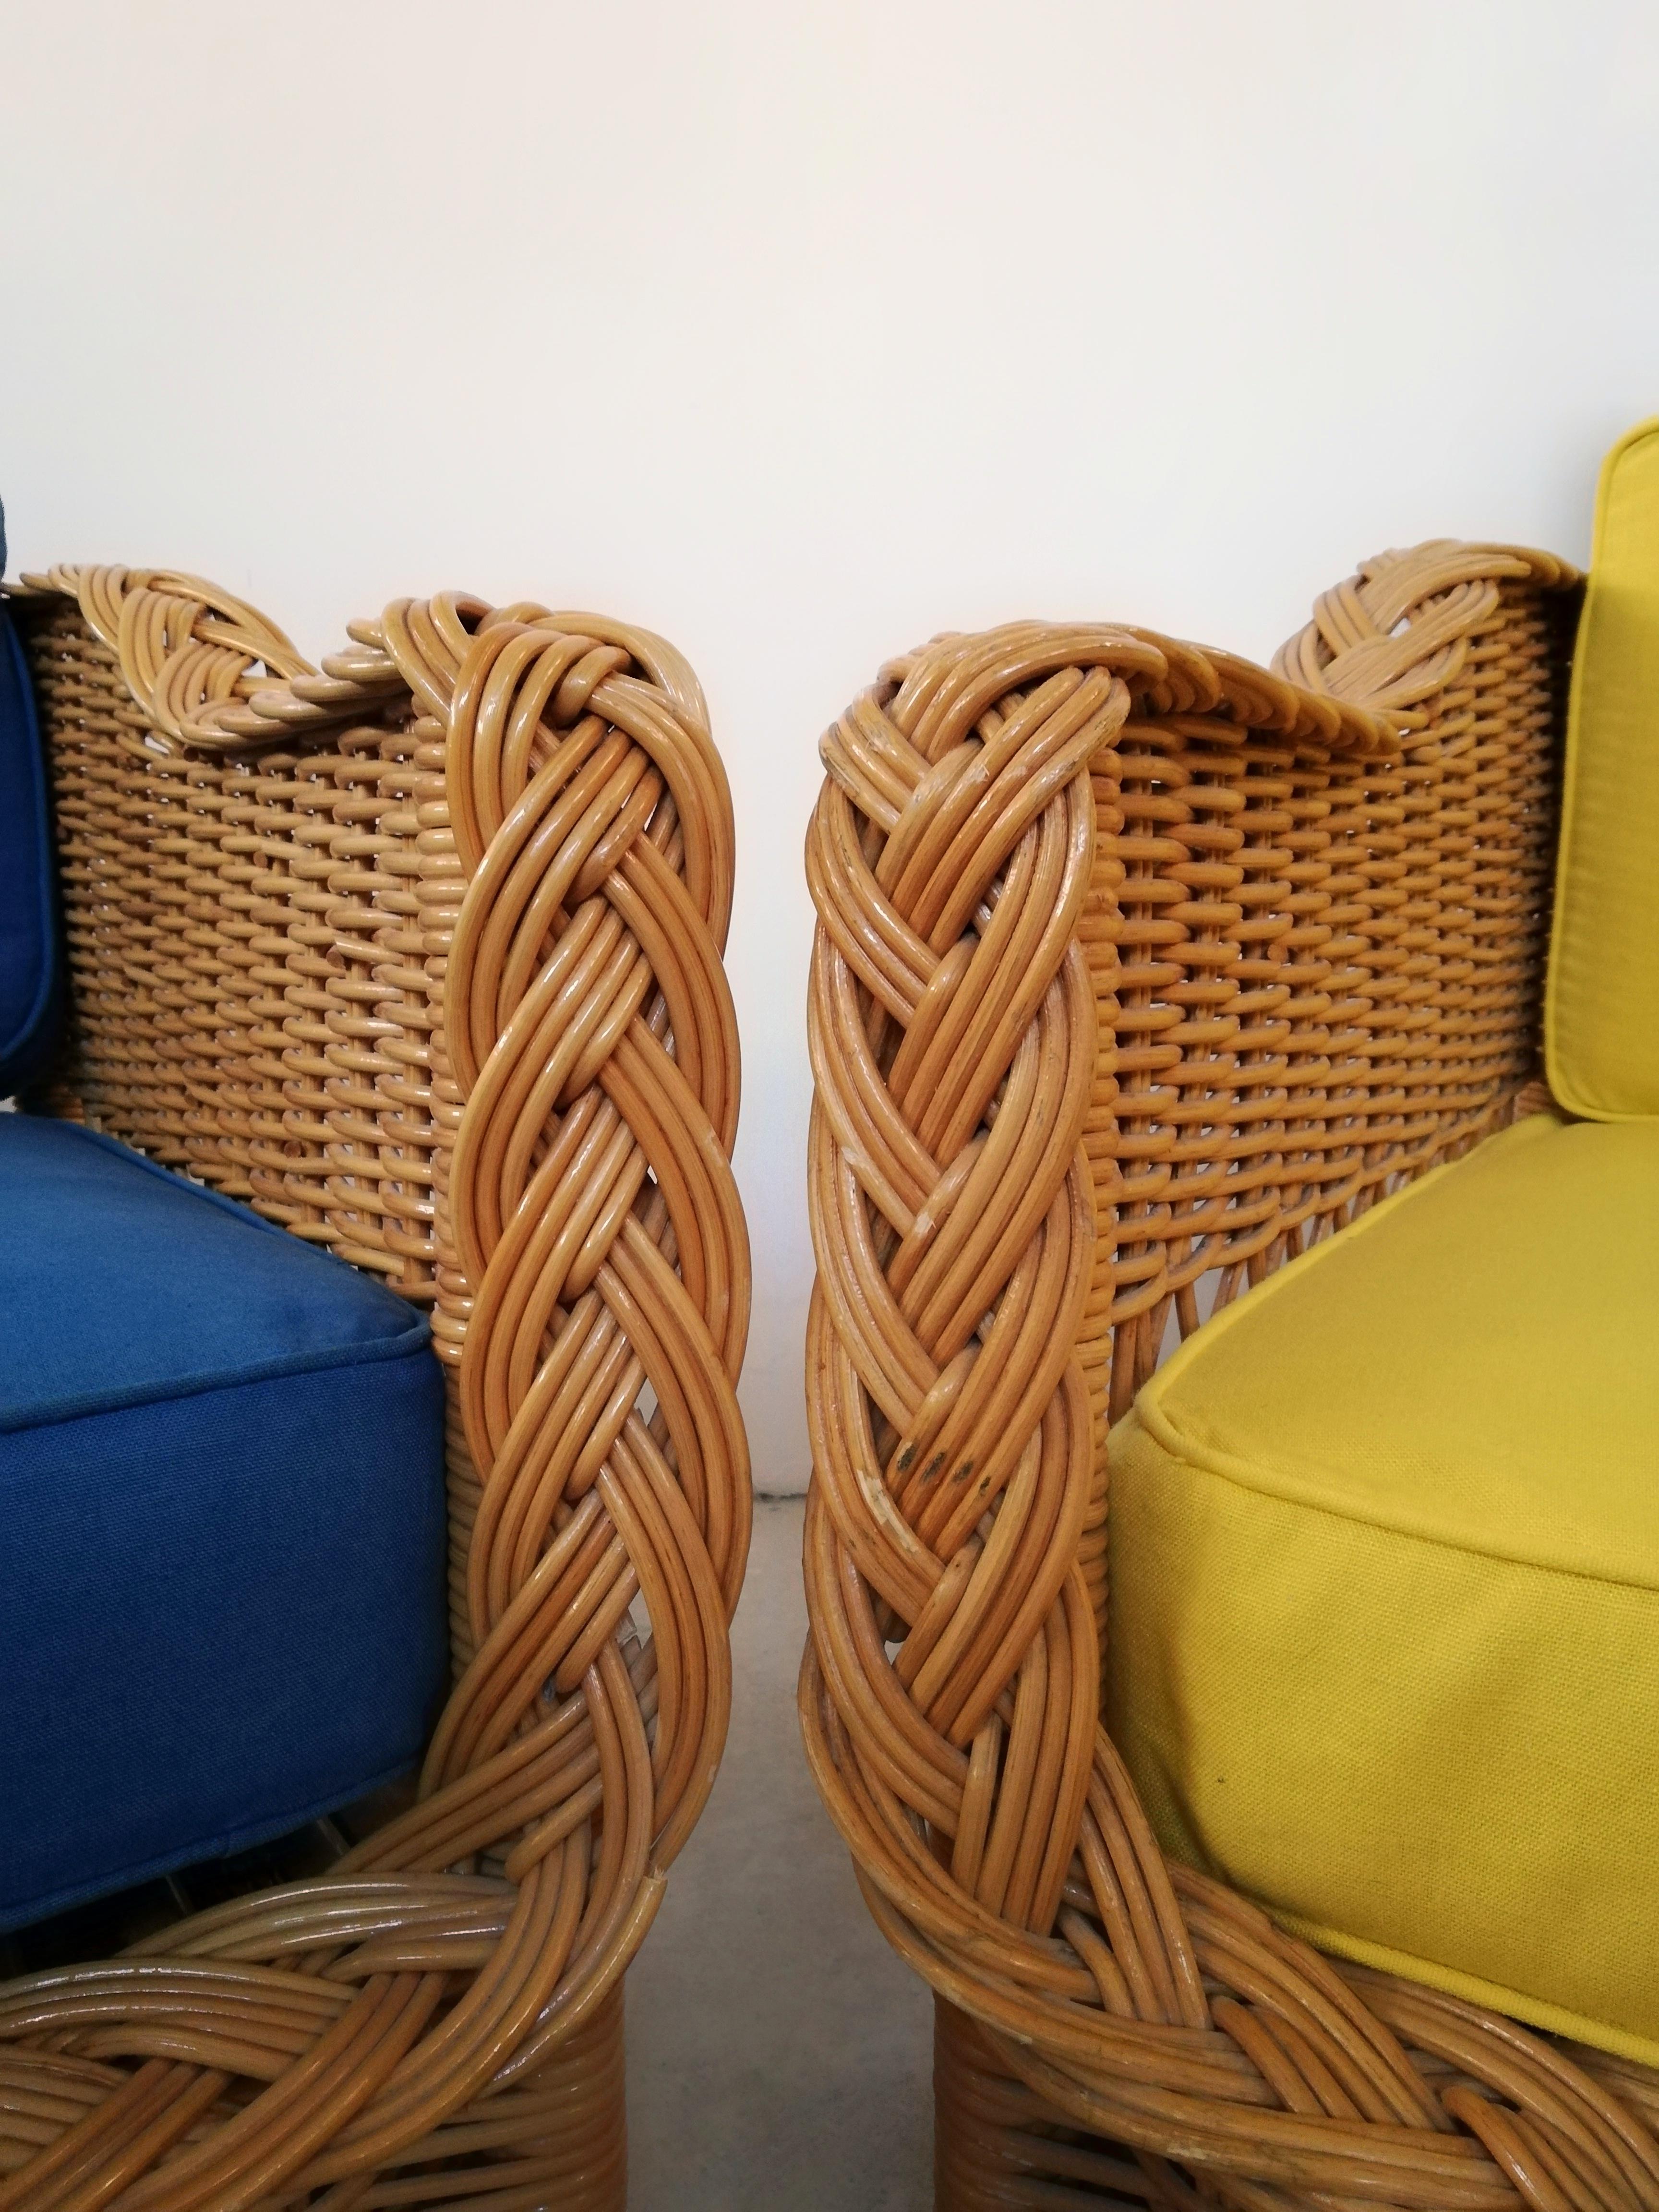 Ein Paar Vintage-Sessel, handgefertigt in Italien zwischen den 1960er und 1970er Jahren.
Die Korbstruktur  dieser Vintage-Sessel sind aus gebogenem und verflochtenem Weidengeflecht gefertigt, während die Sitzfläche aus Buchenholz und Rattanrohr